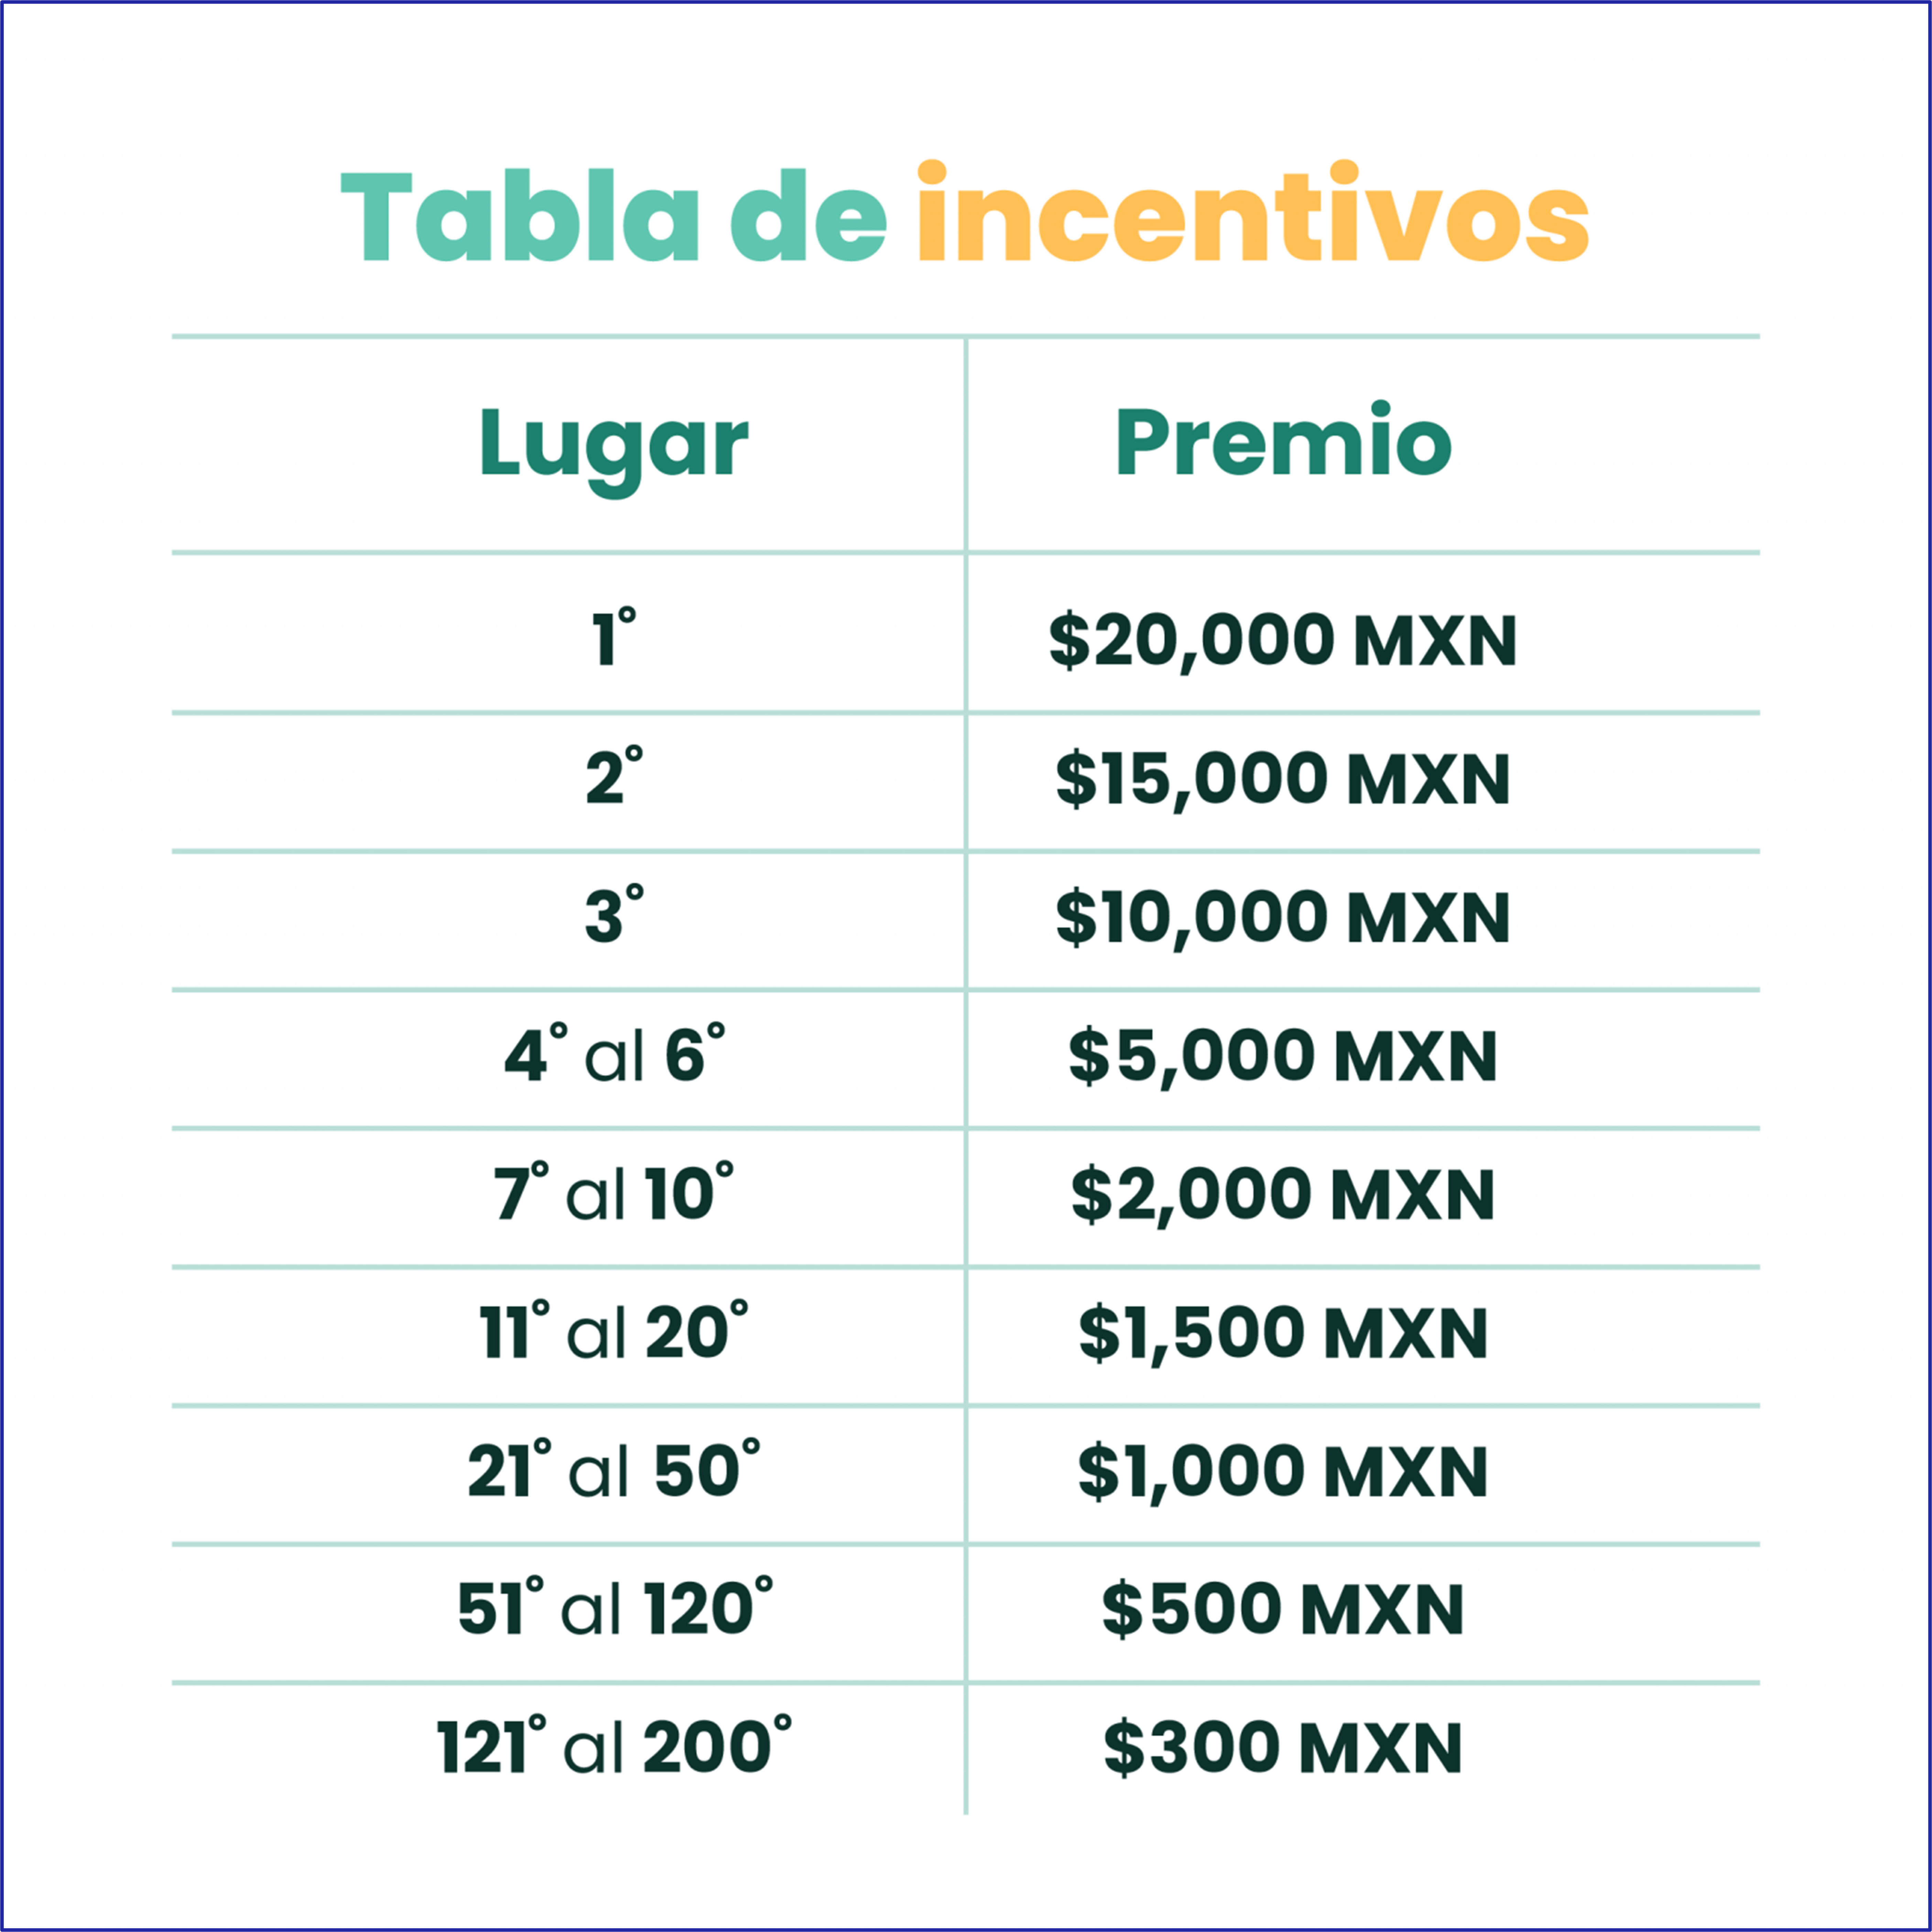 Tabla de incentivos de la dinámica ¡Código de Invitado! de Dinn para ganar hasta 20 mil pesos